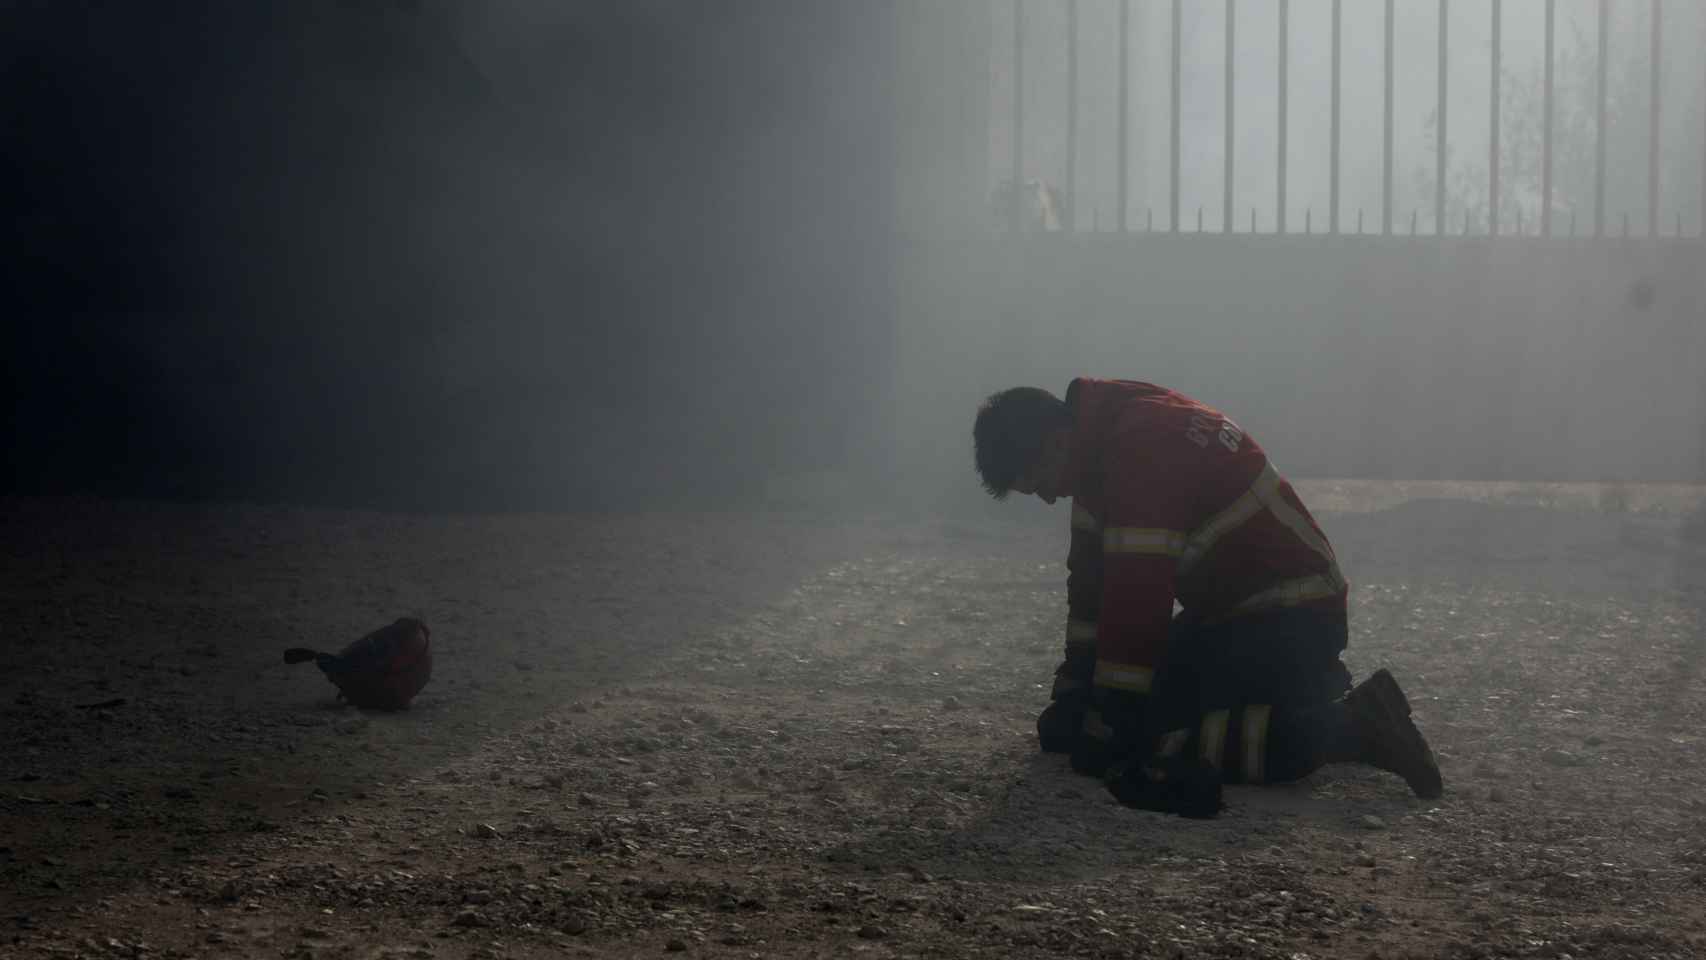 Un bombero arrodillado tras el combate al incendio en Portugal.